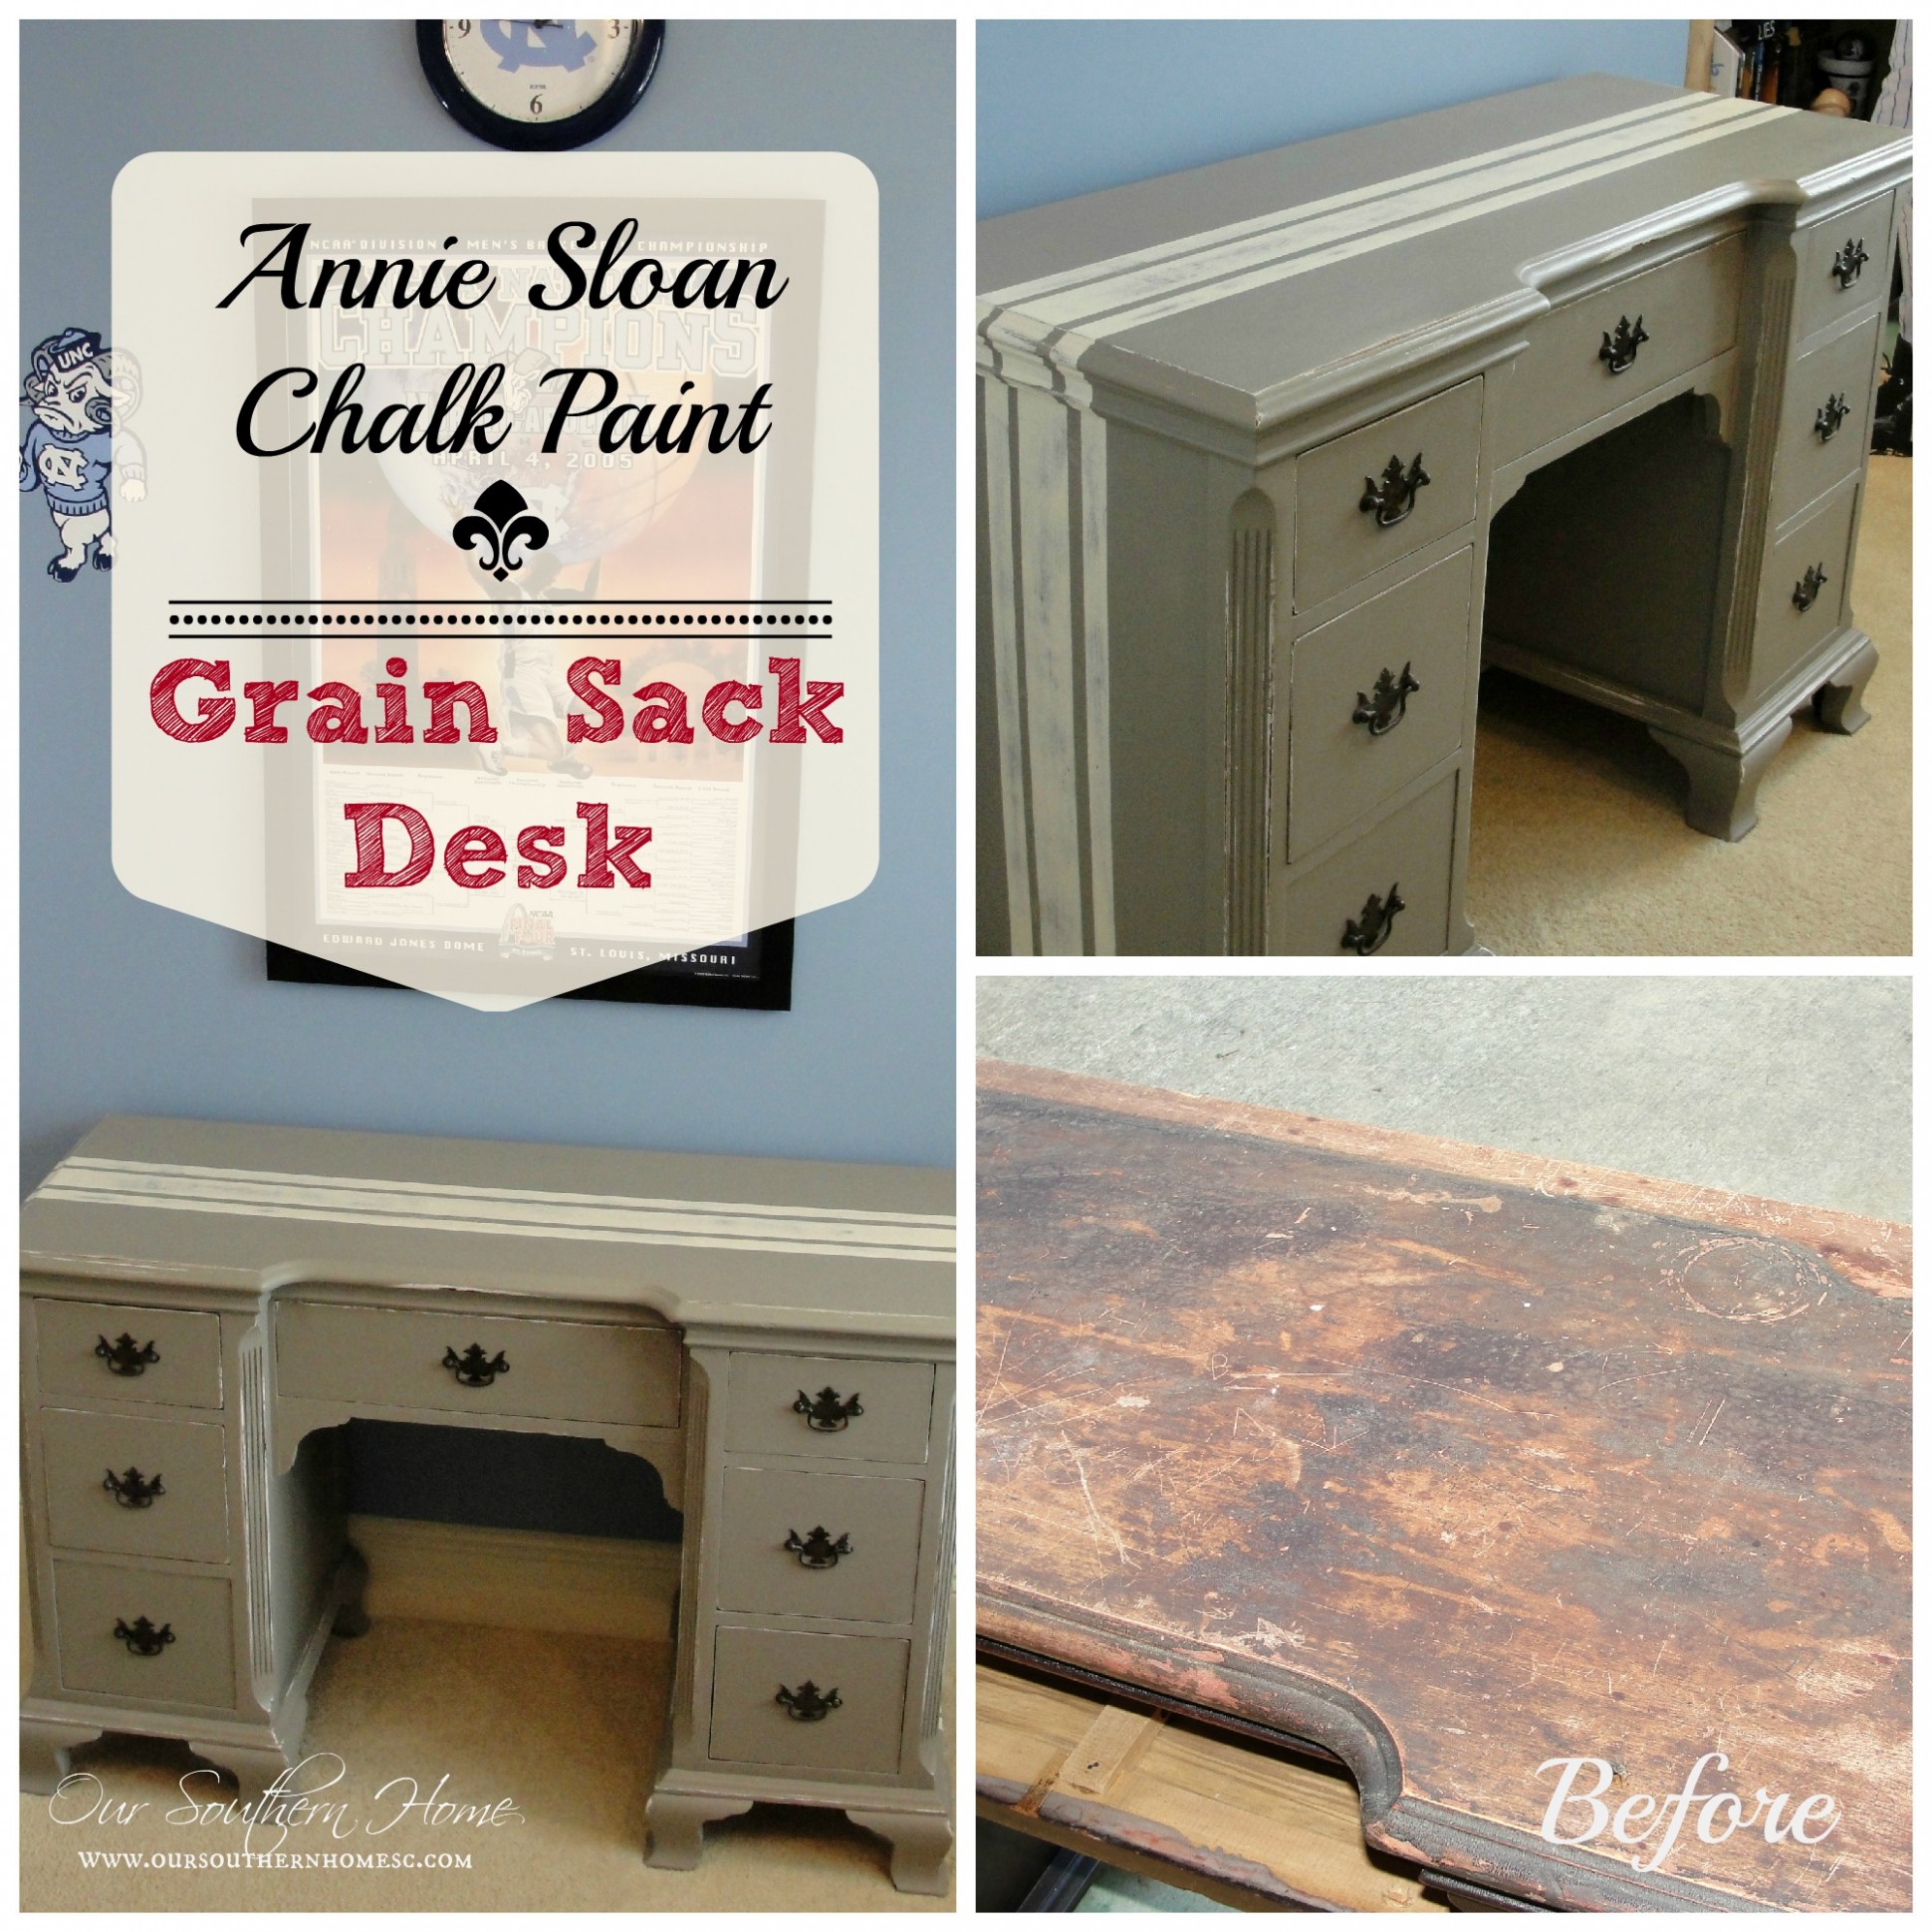 Grain Sack Desk Annie Sloan Chalk Paint Our Southern Home You Annie Sloan Chalk Paint